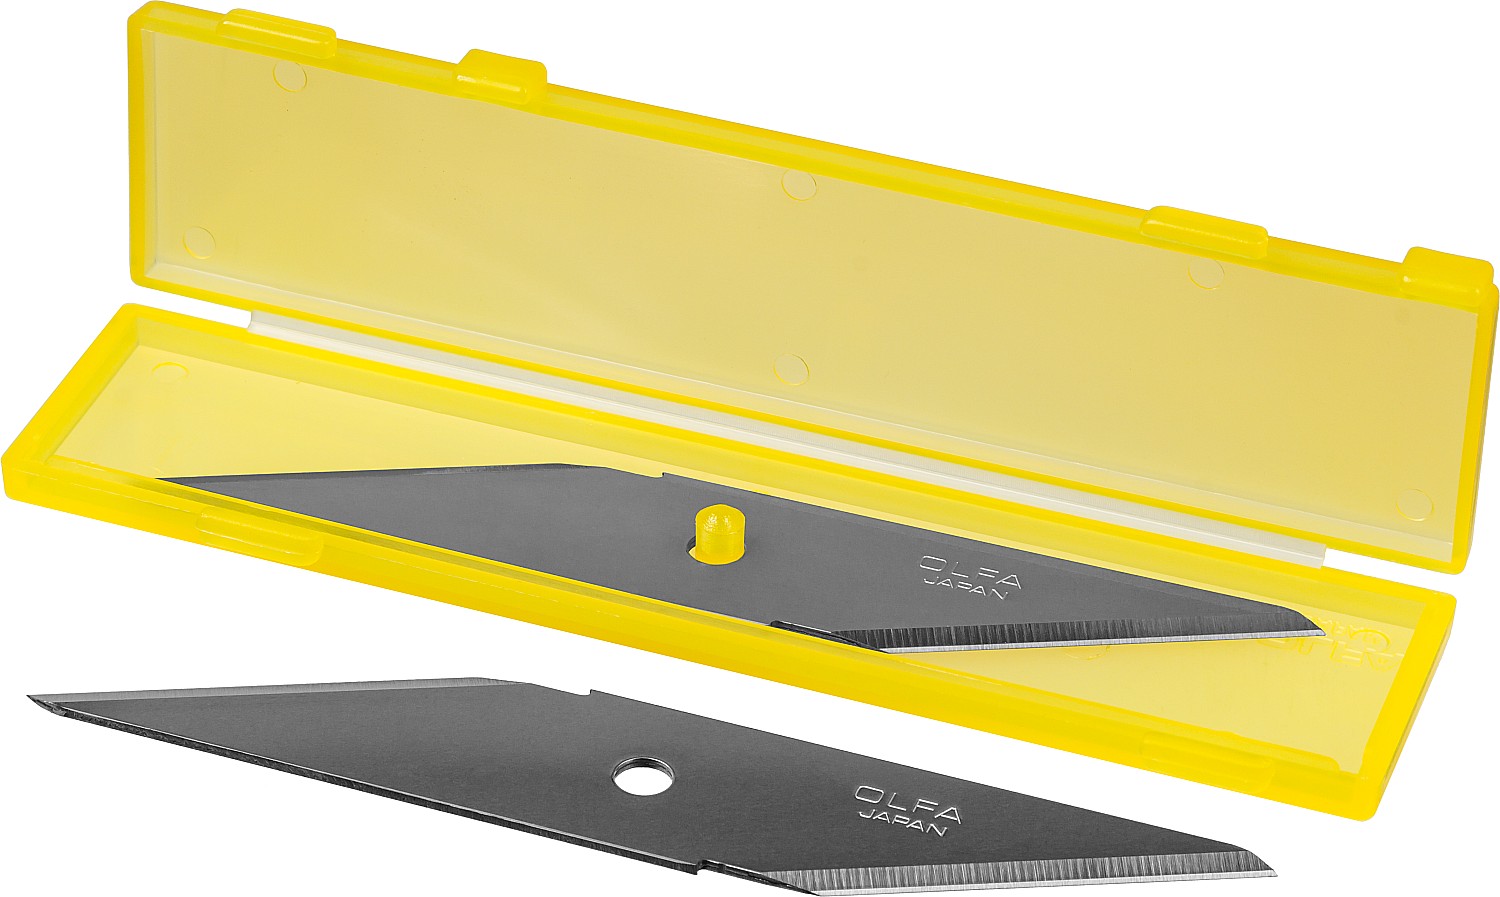 OLFA 18 мм, 2 шт, лезвия для ножа OL-CK-1 (OL-CKB-1)